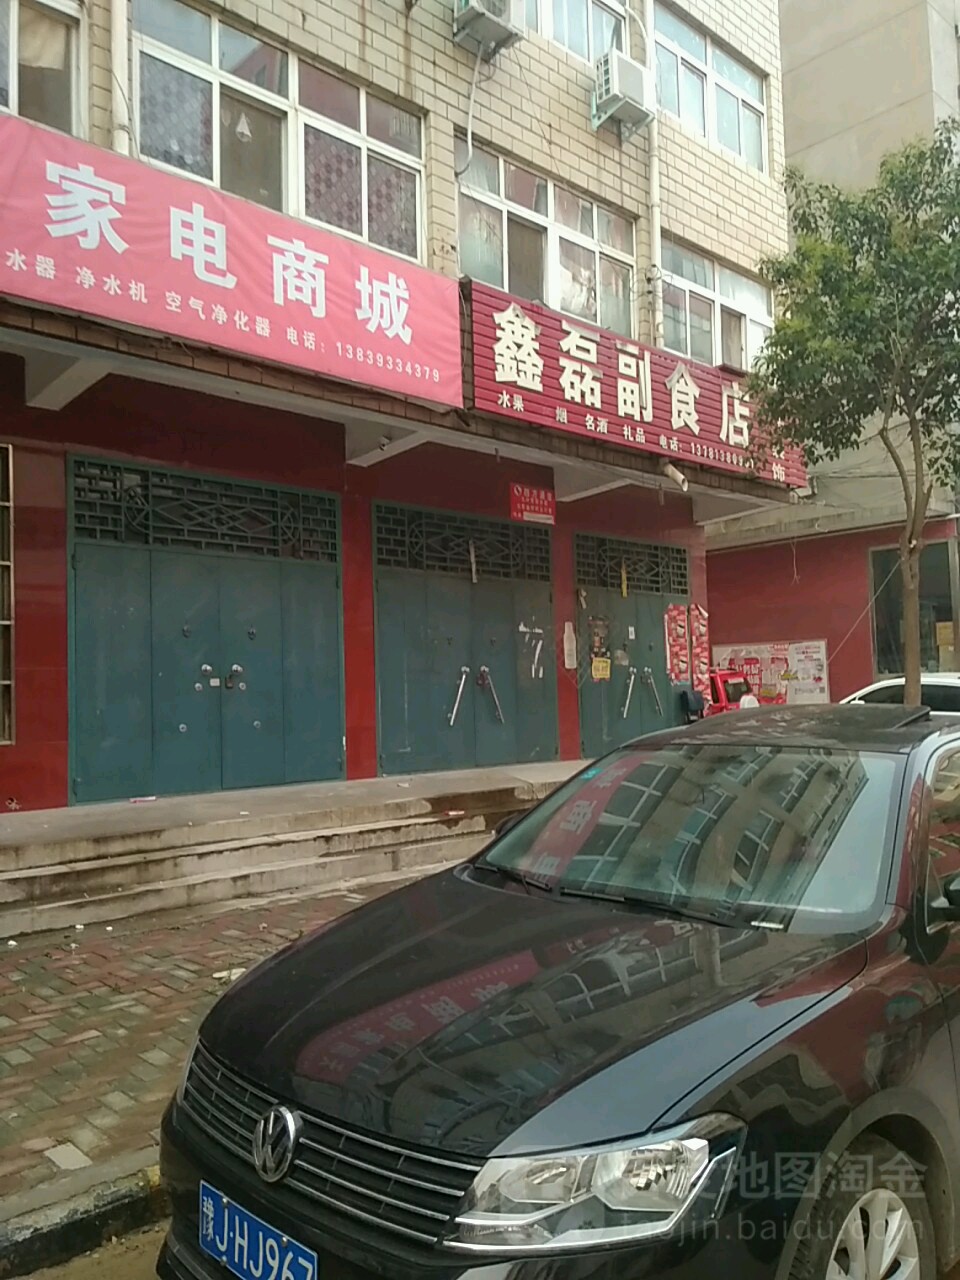 鑫磊副食店